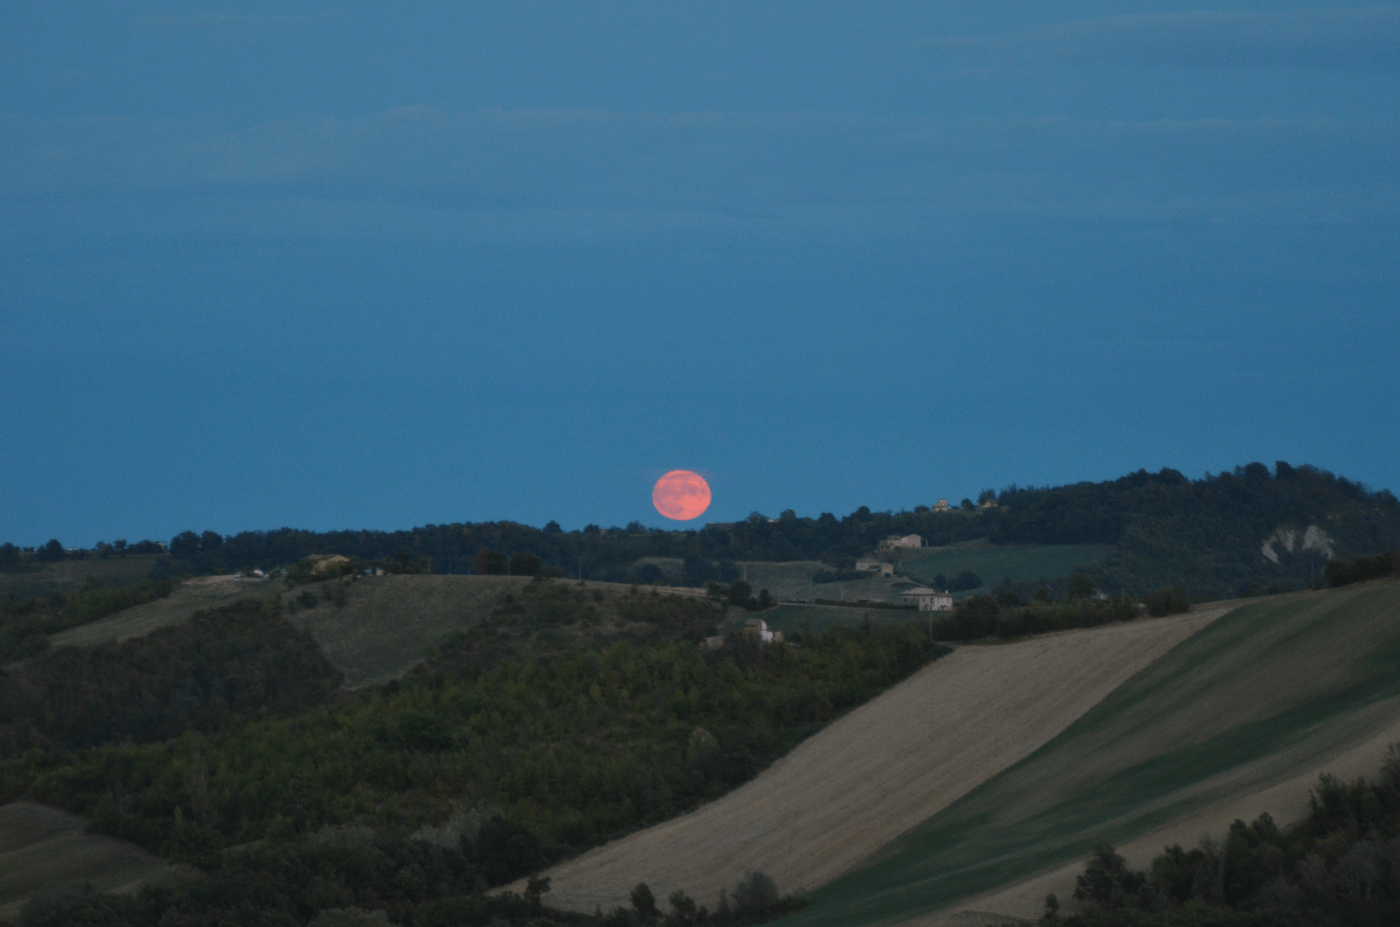 pink moon, dark blue background